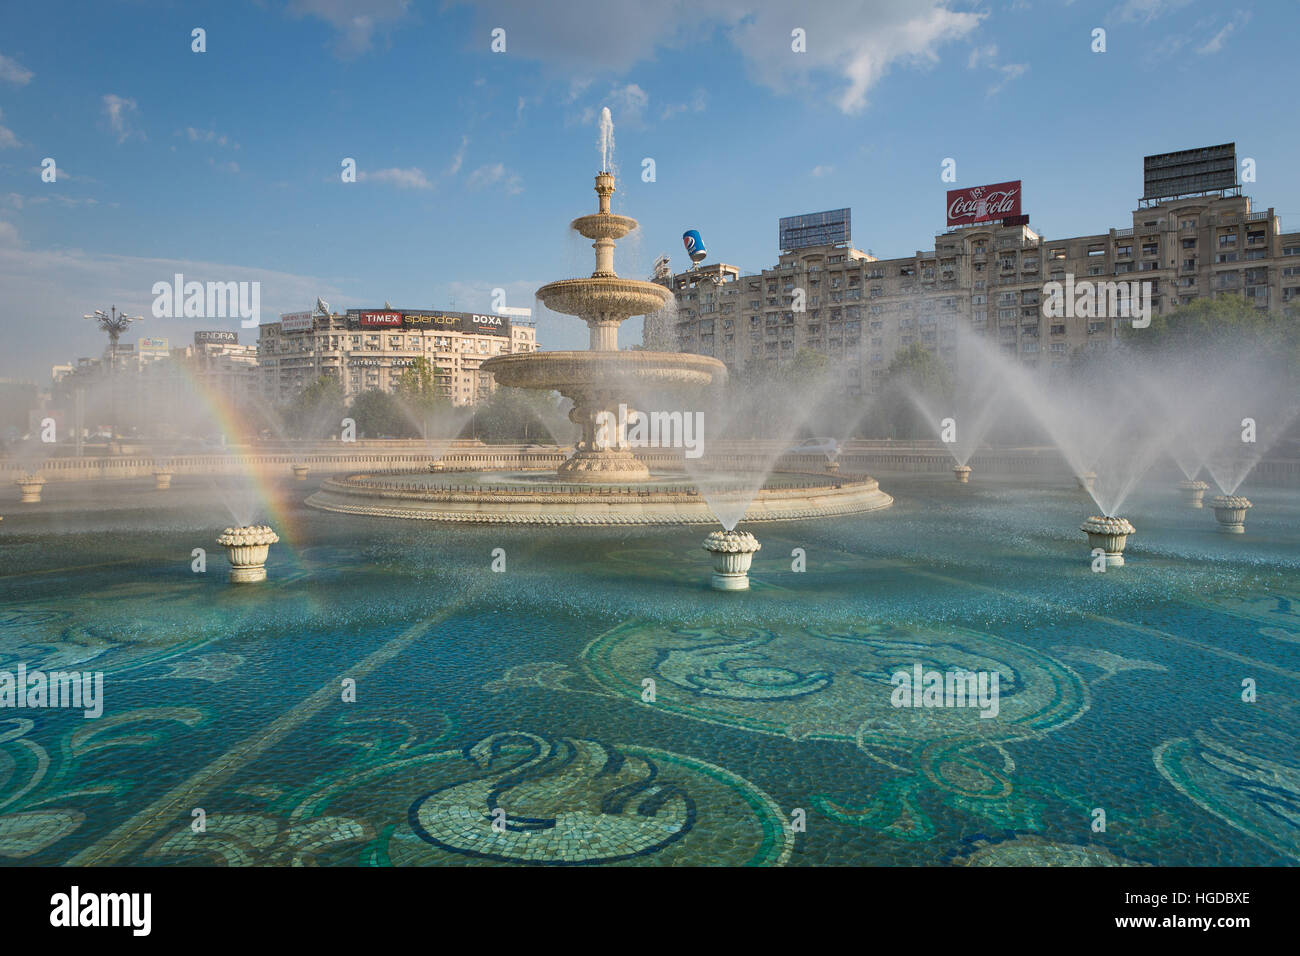 Roumanie, Bucarest, la Place Unirii, la Fontaine d'Unirii Banque D'Images